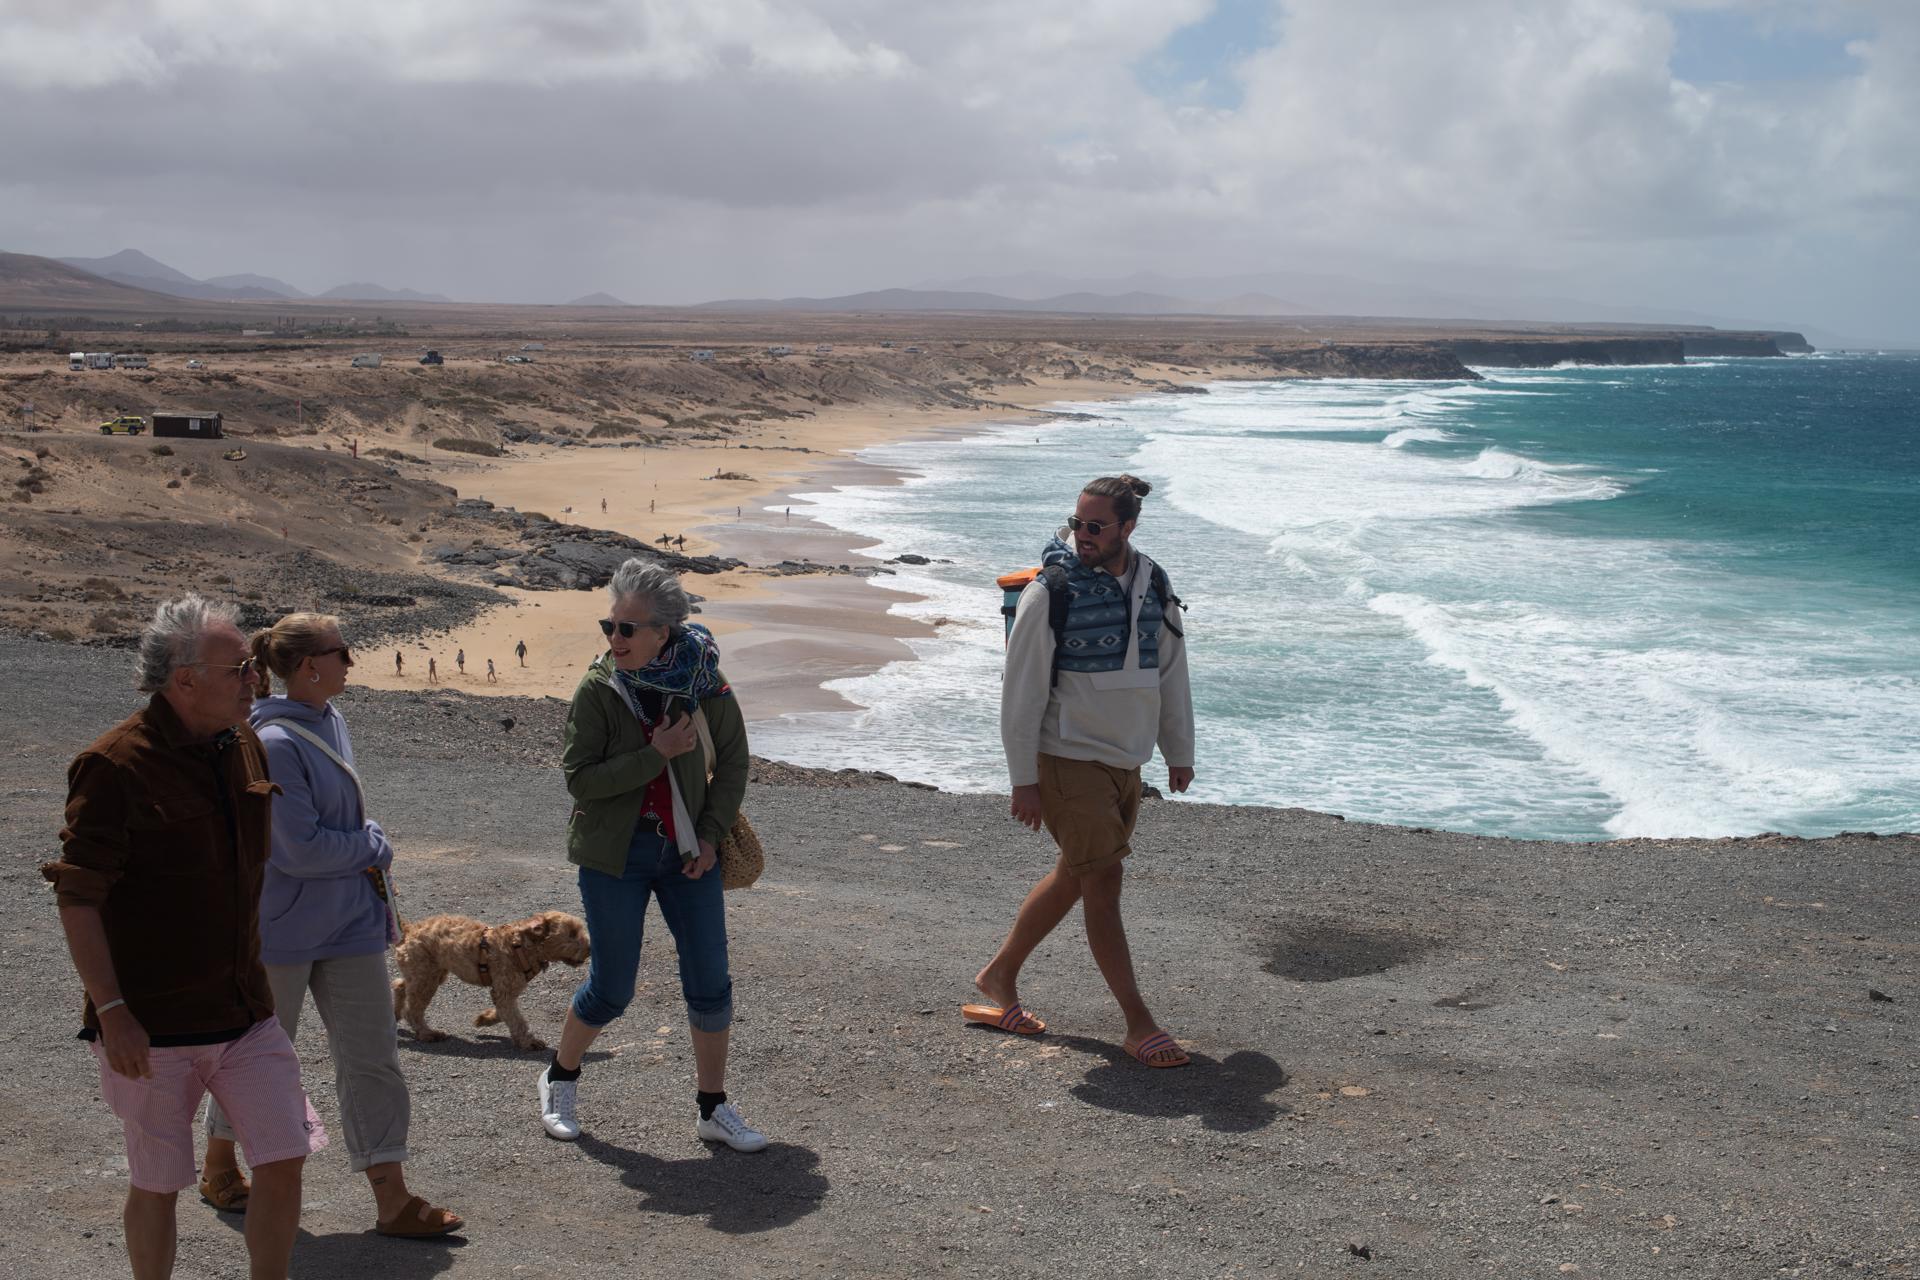 Foto de archivo de la costa de La Oliva, en Fuerteventura. EFE/Carlos de Saá